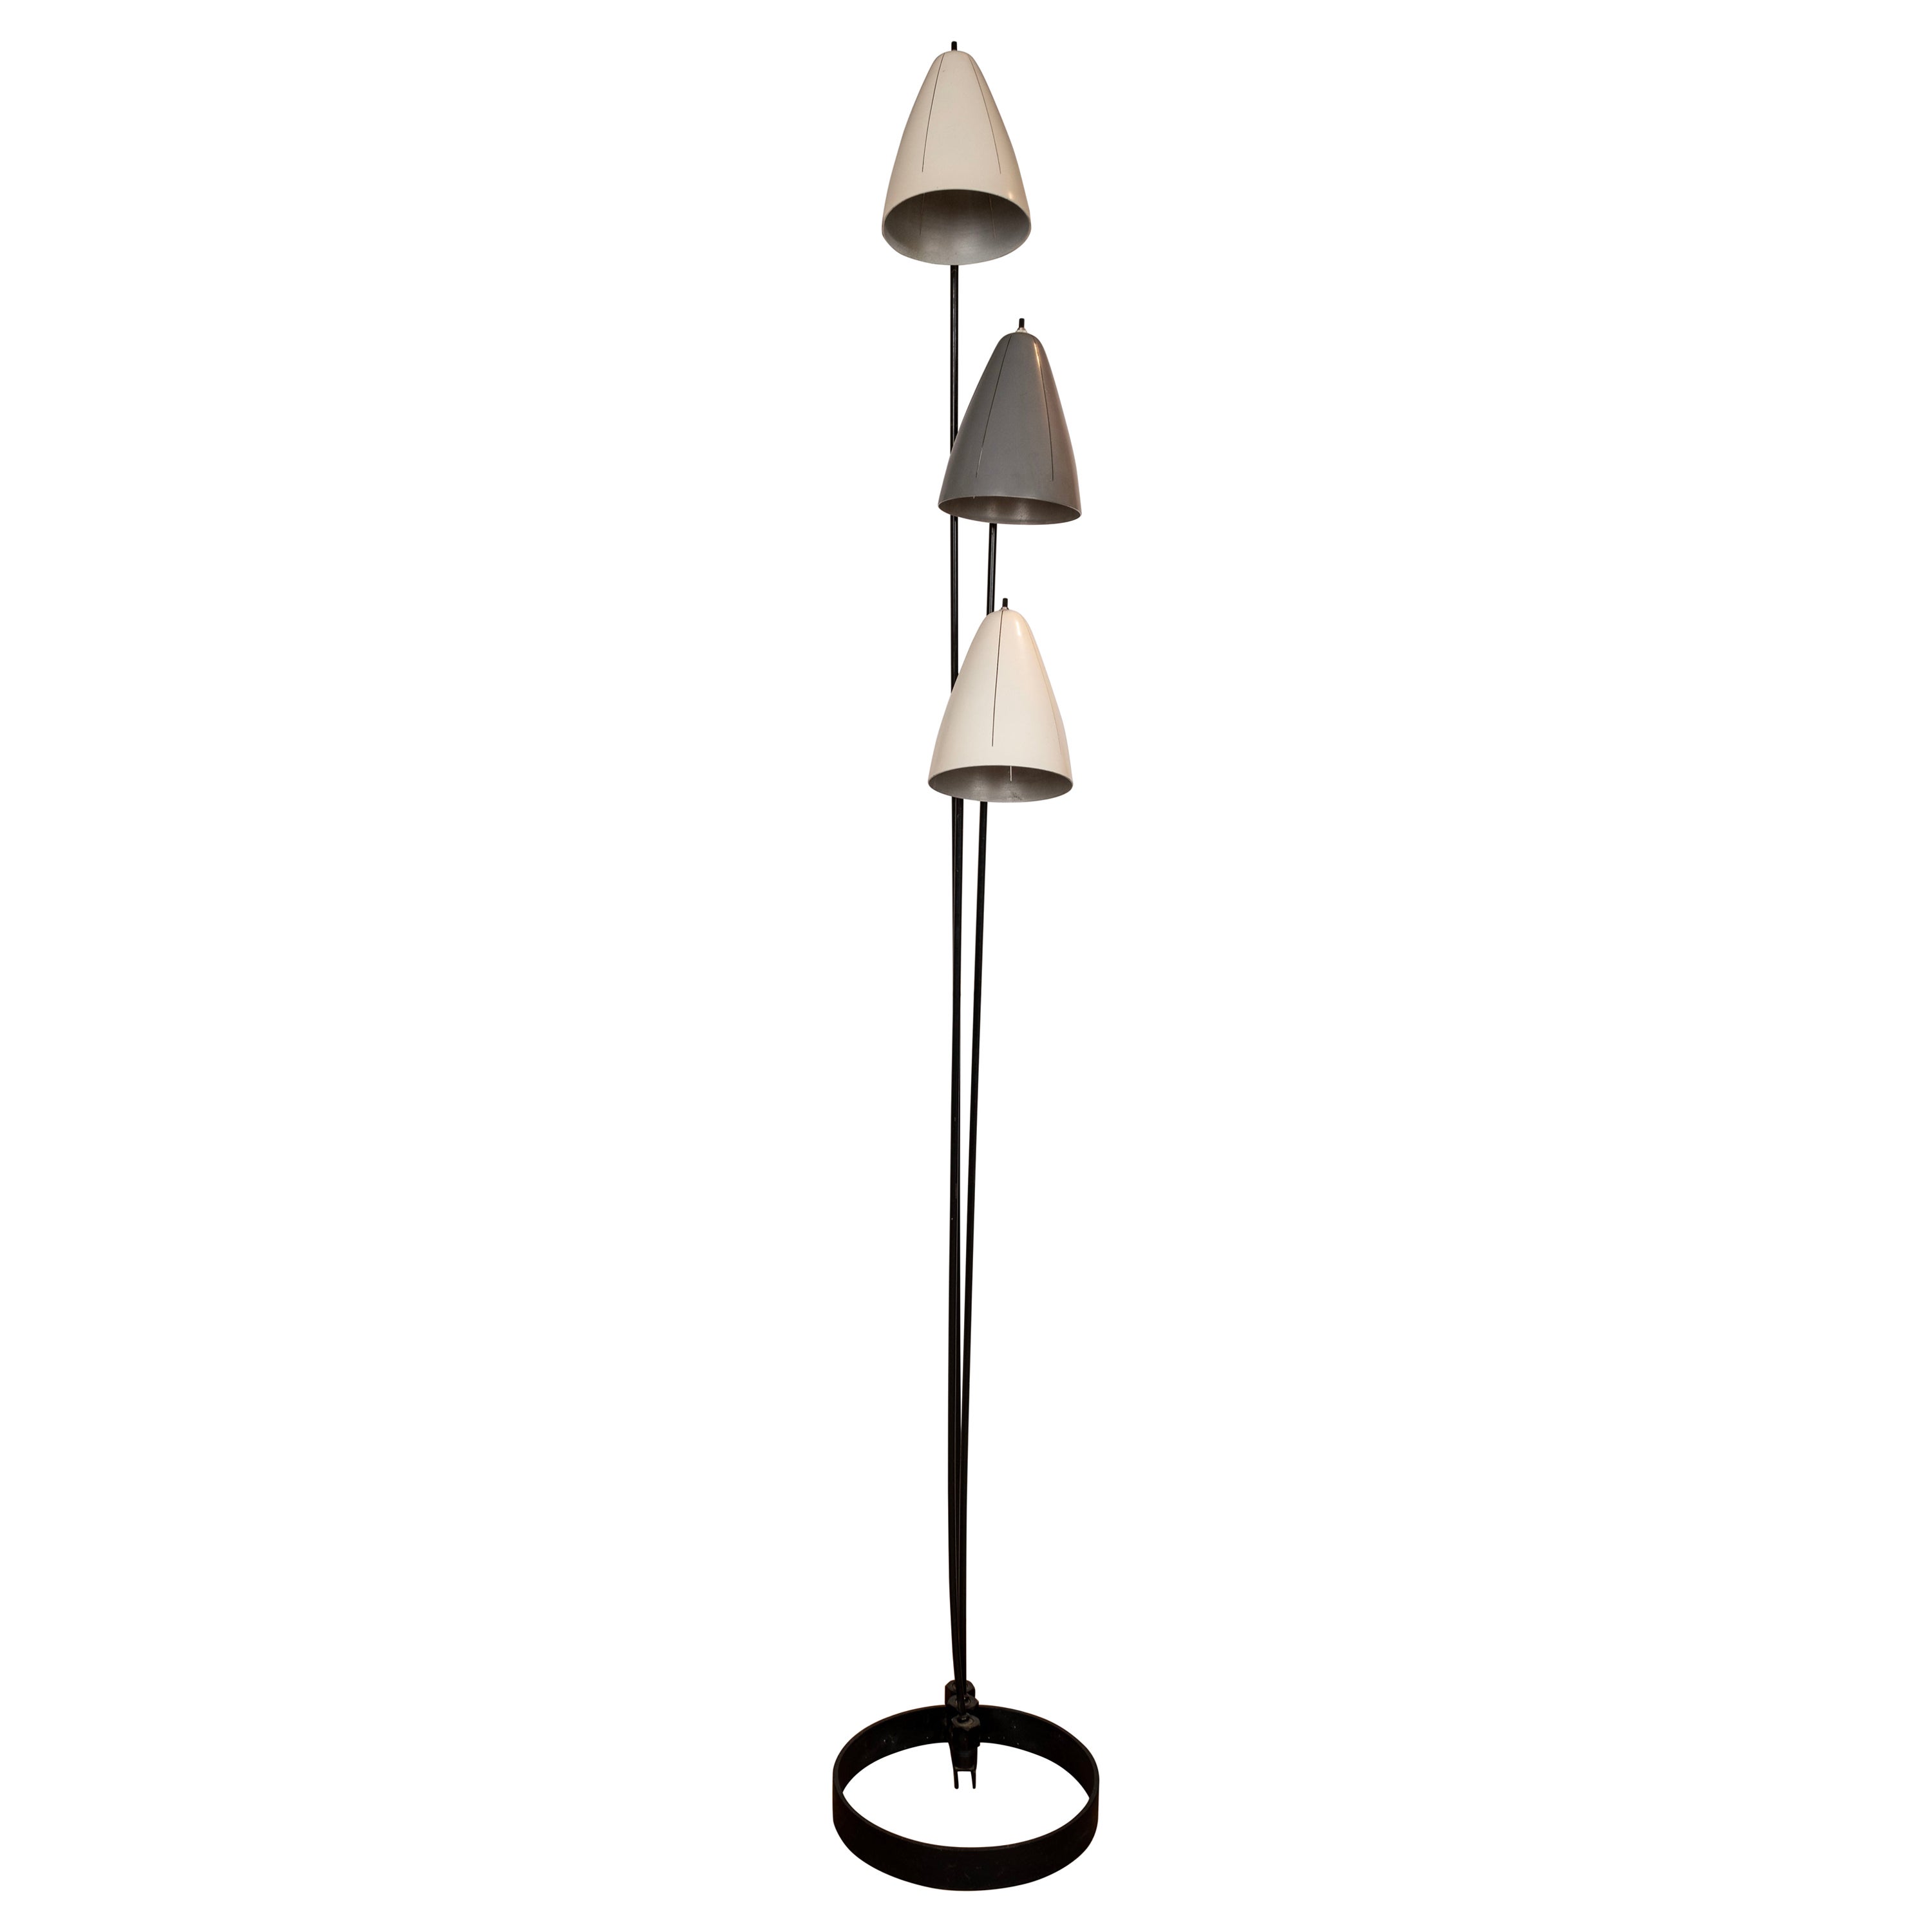  Articulating Floor Lamp by Ben Seibel For Sale